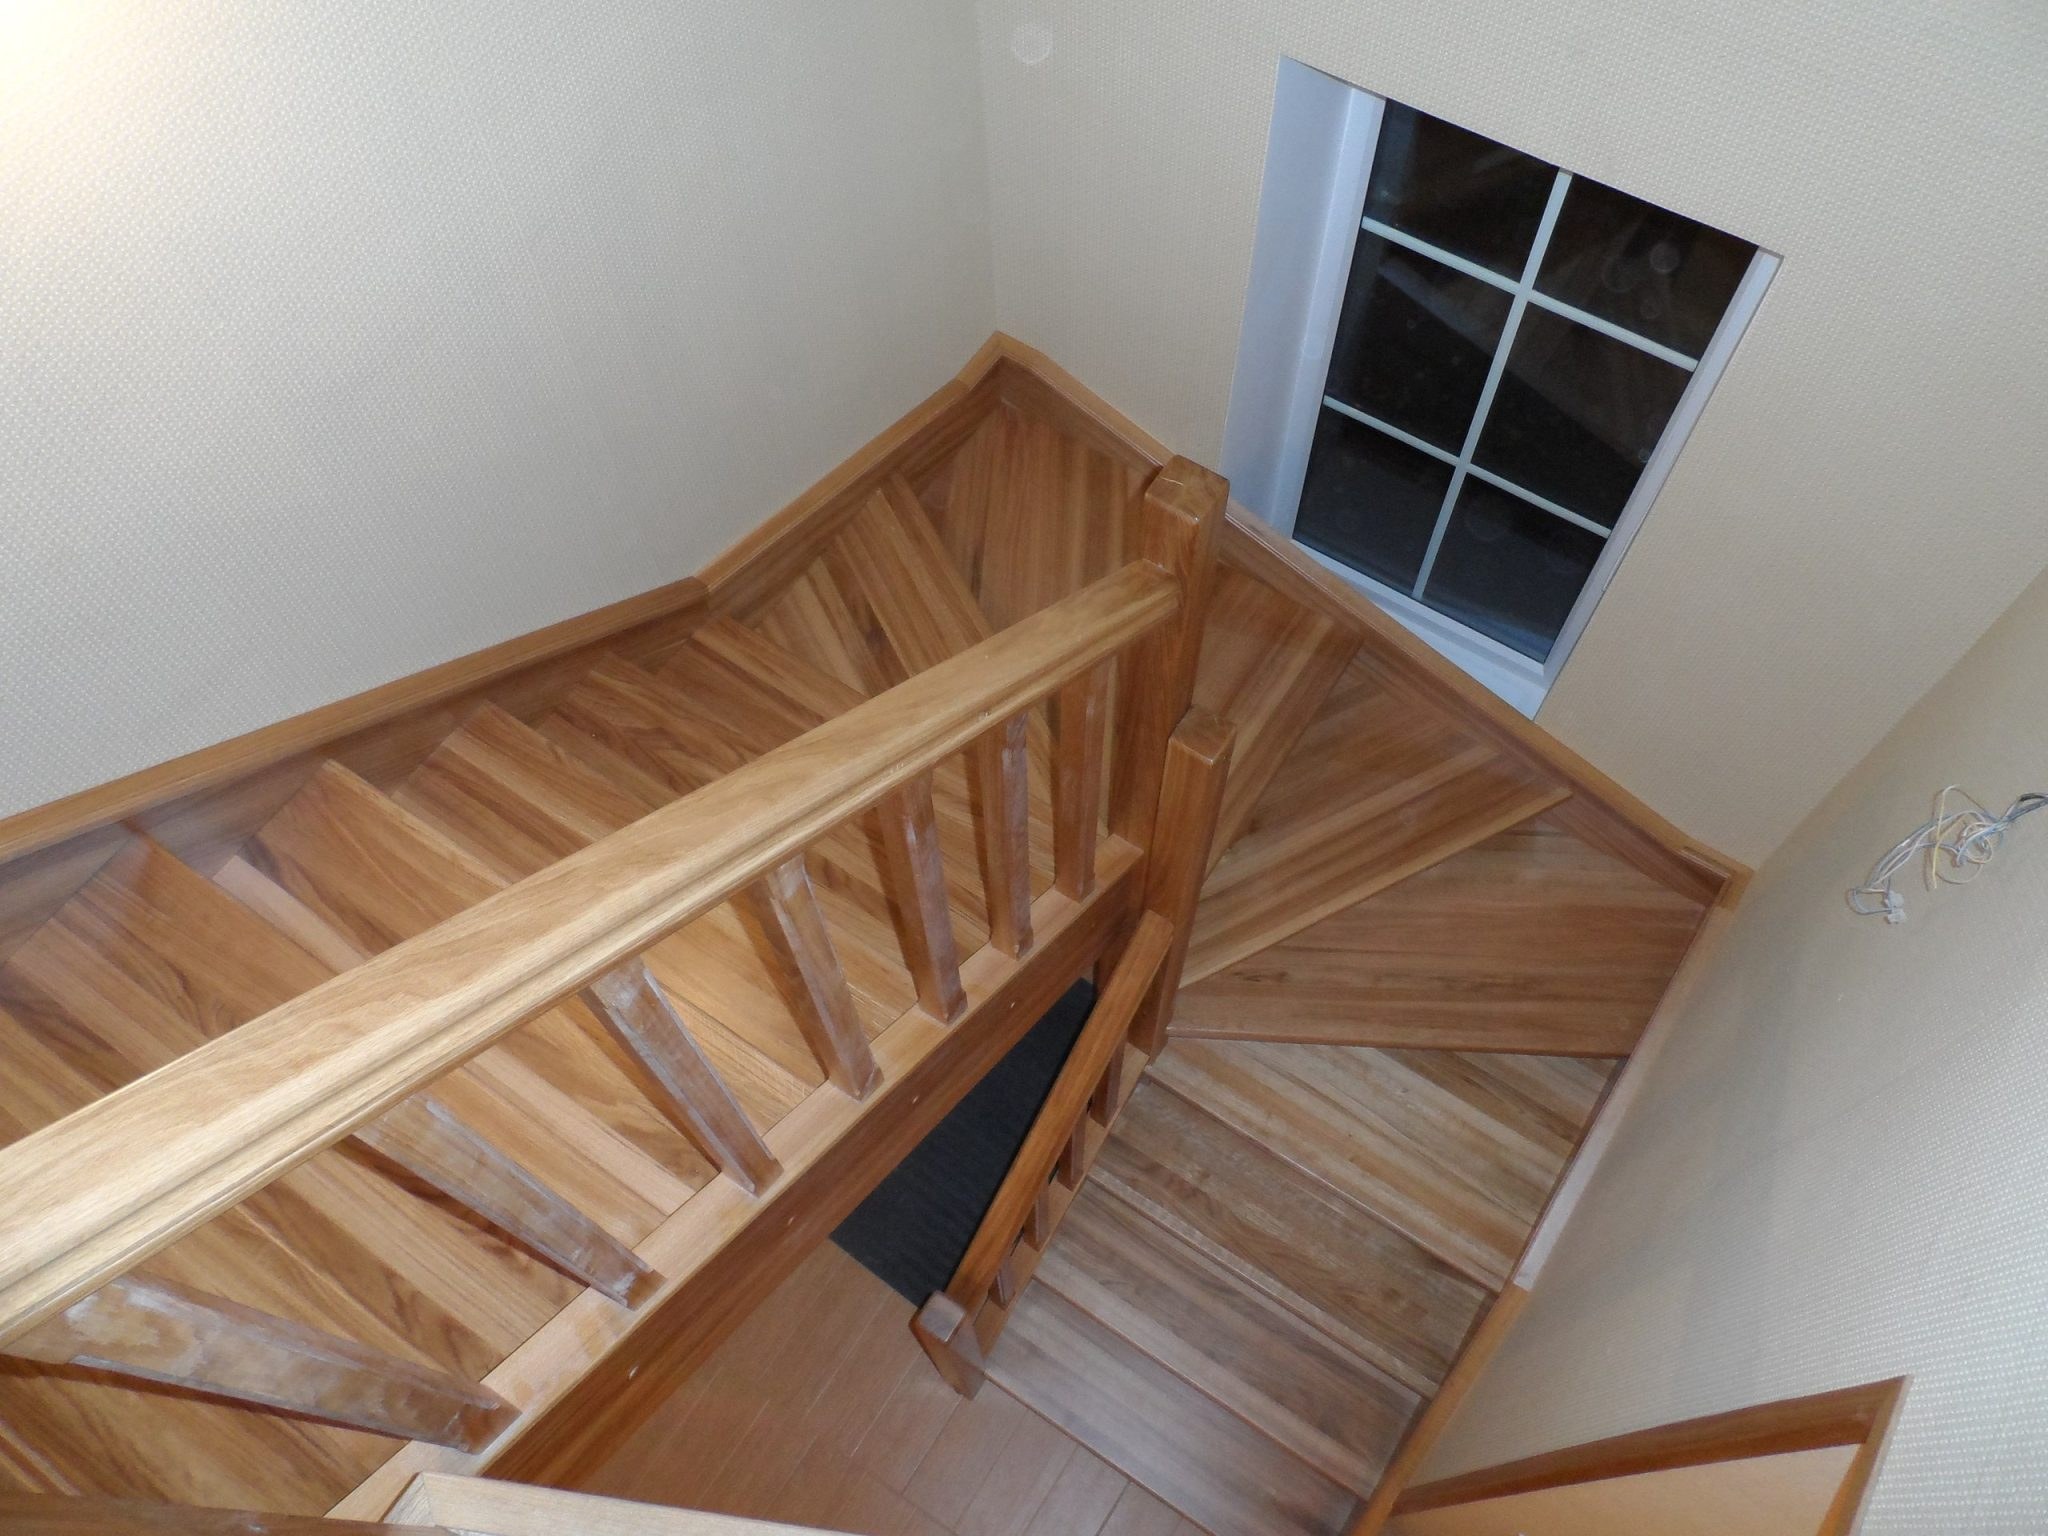 Забежные лестницы второй этаж. Лестница 180 градусов с забежными ступенями. Лестница забежная деревянная. Деревянные лестницы с забежными ступенями на 180 градусов. Лестница забежная деревянная с поворотом на 180 градусов.